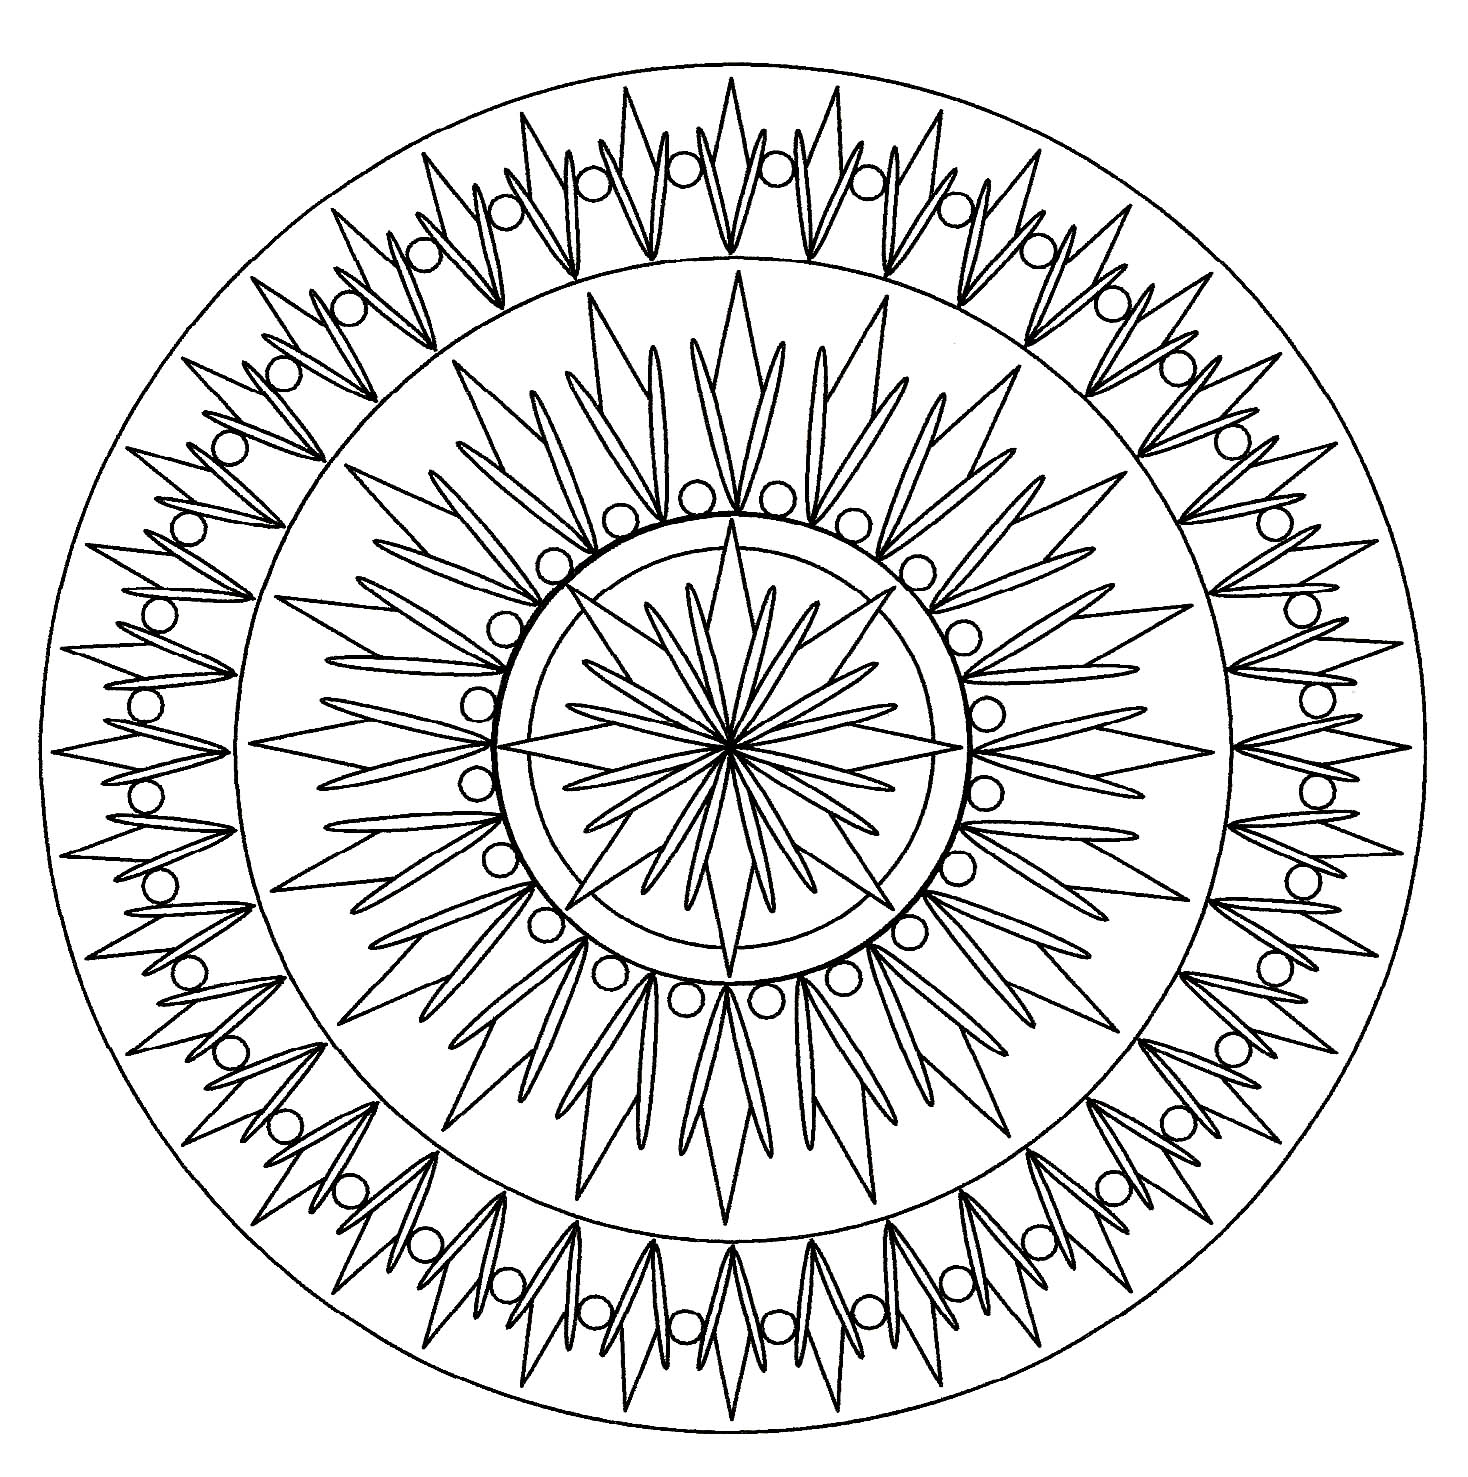 Mandala mit einfachen und abstrakten Mustern